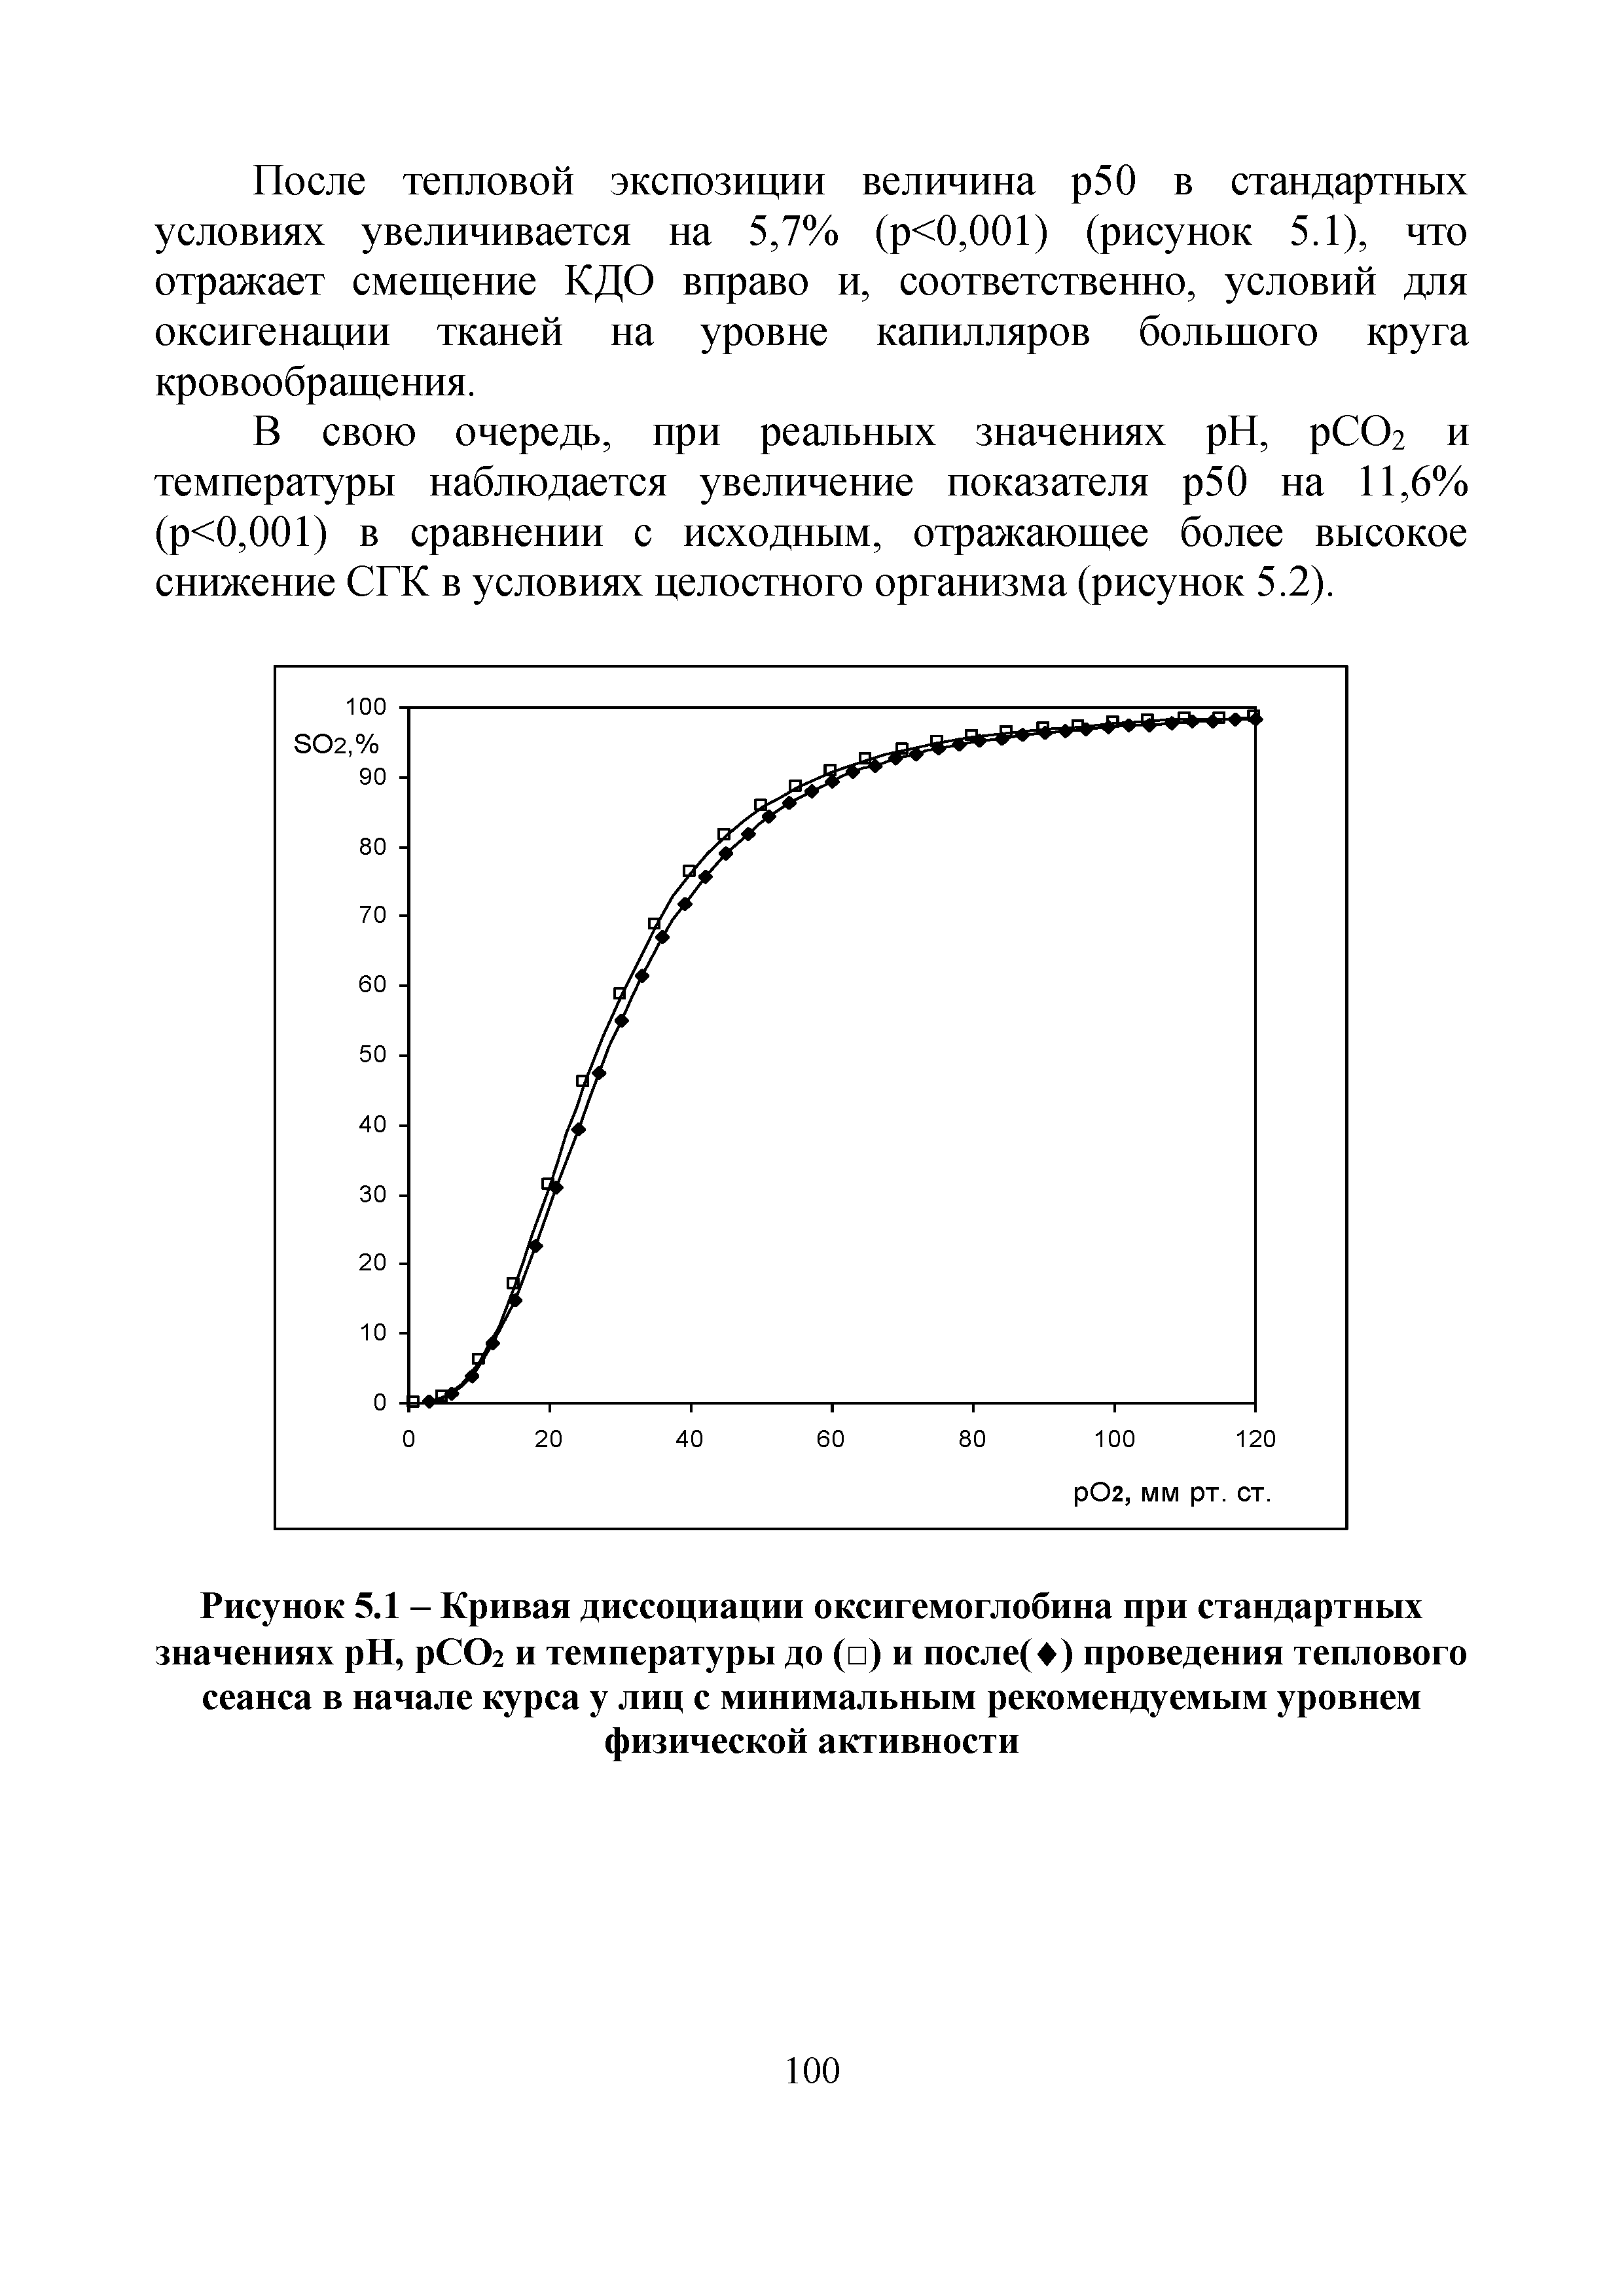 Рисунок 5.1 - Кривая диссоциации оксигемоглобина при стандартных значениях H, рСОг и температуры до ( ) и после(Ф) проведения теплового сеанса в начале курса у лиц с минимальным рекомендуемым уровнем физической активности...